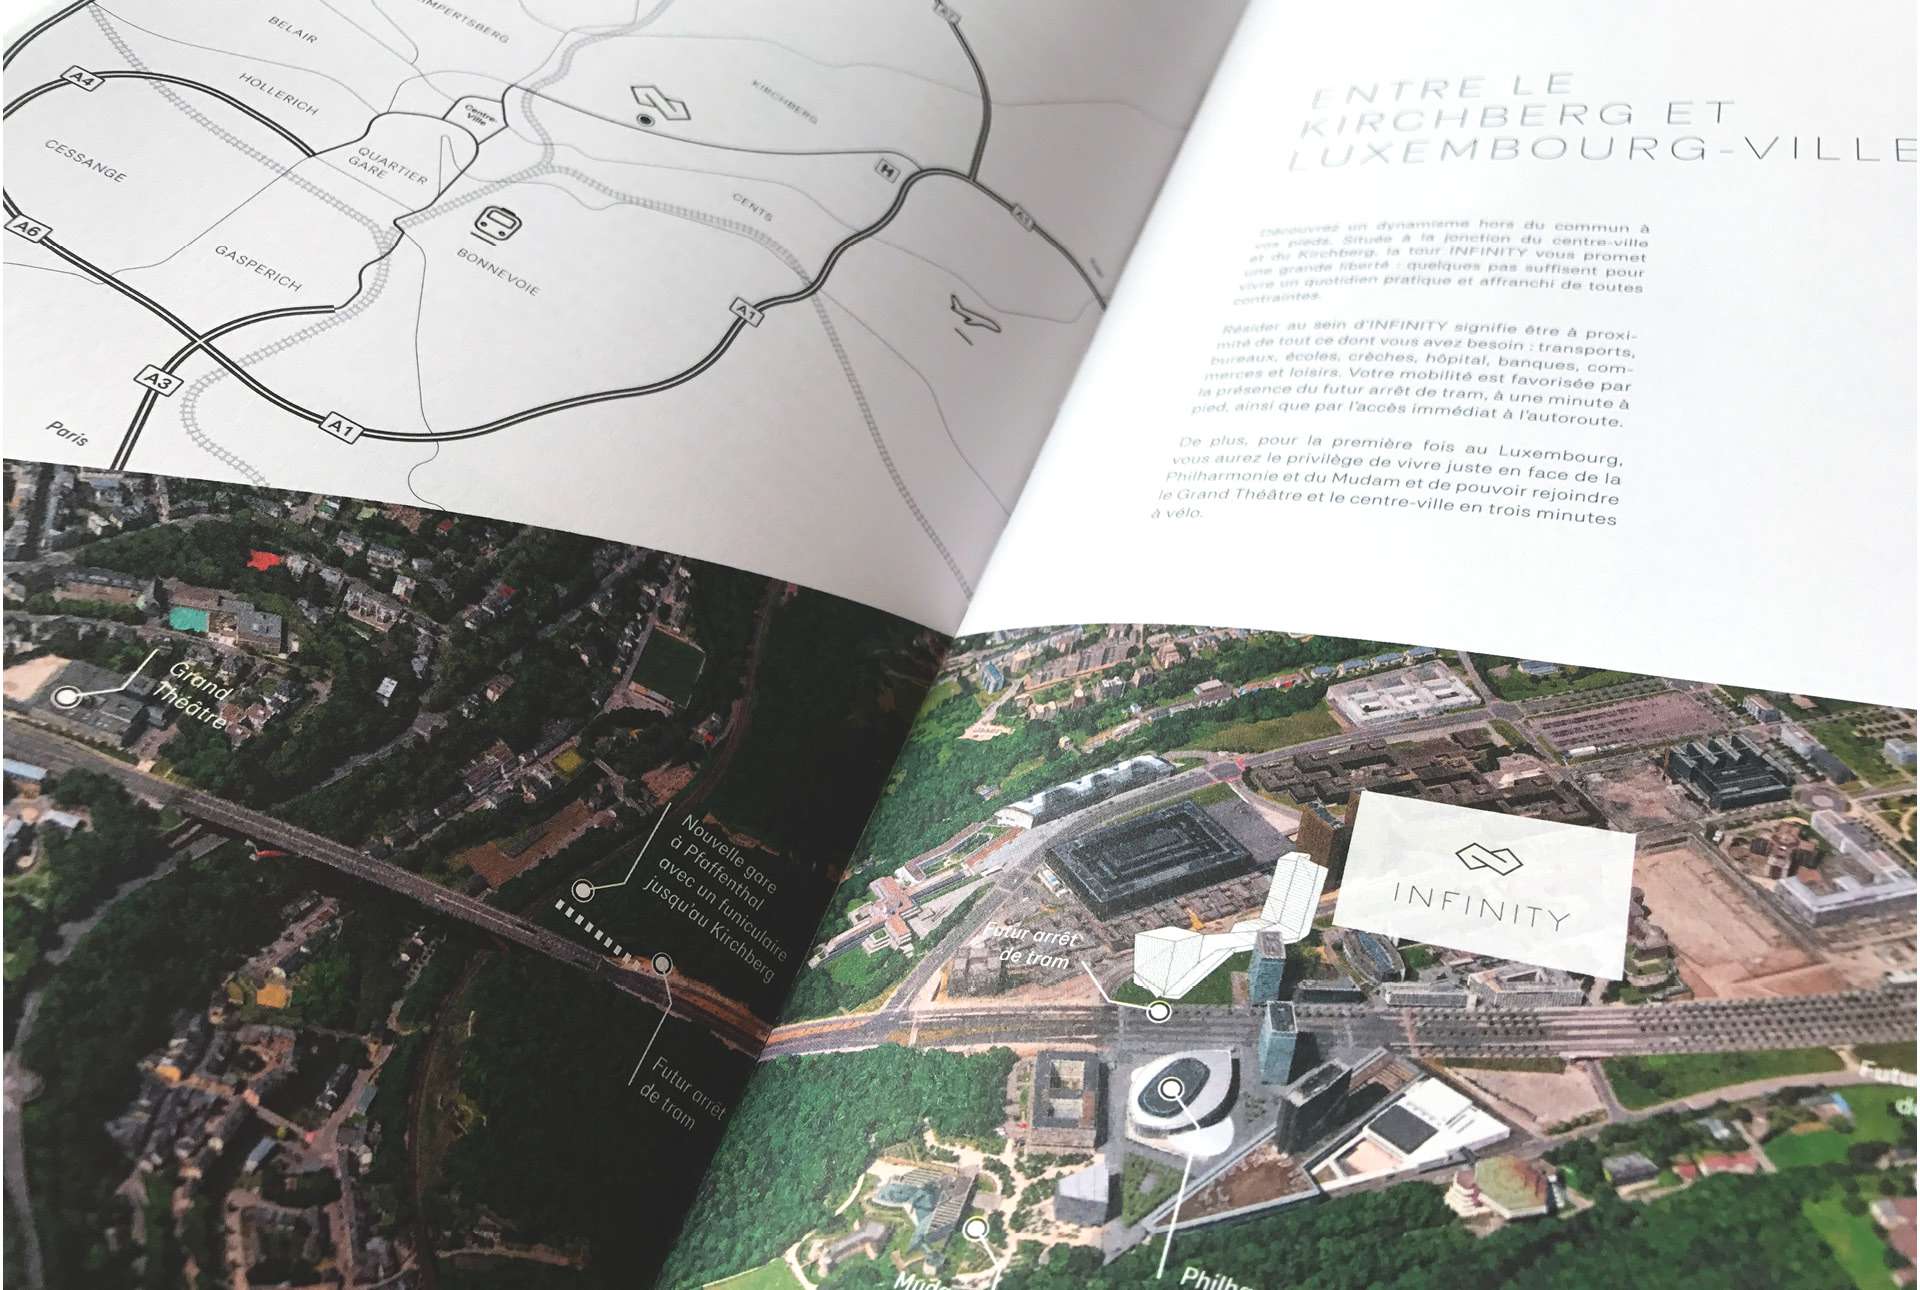 Plan montrant la situation du projet résidentiel Infinity, visible à l'intérieur de la brochure